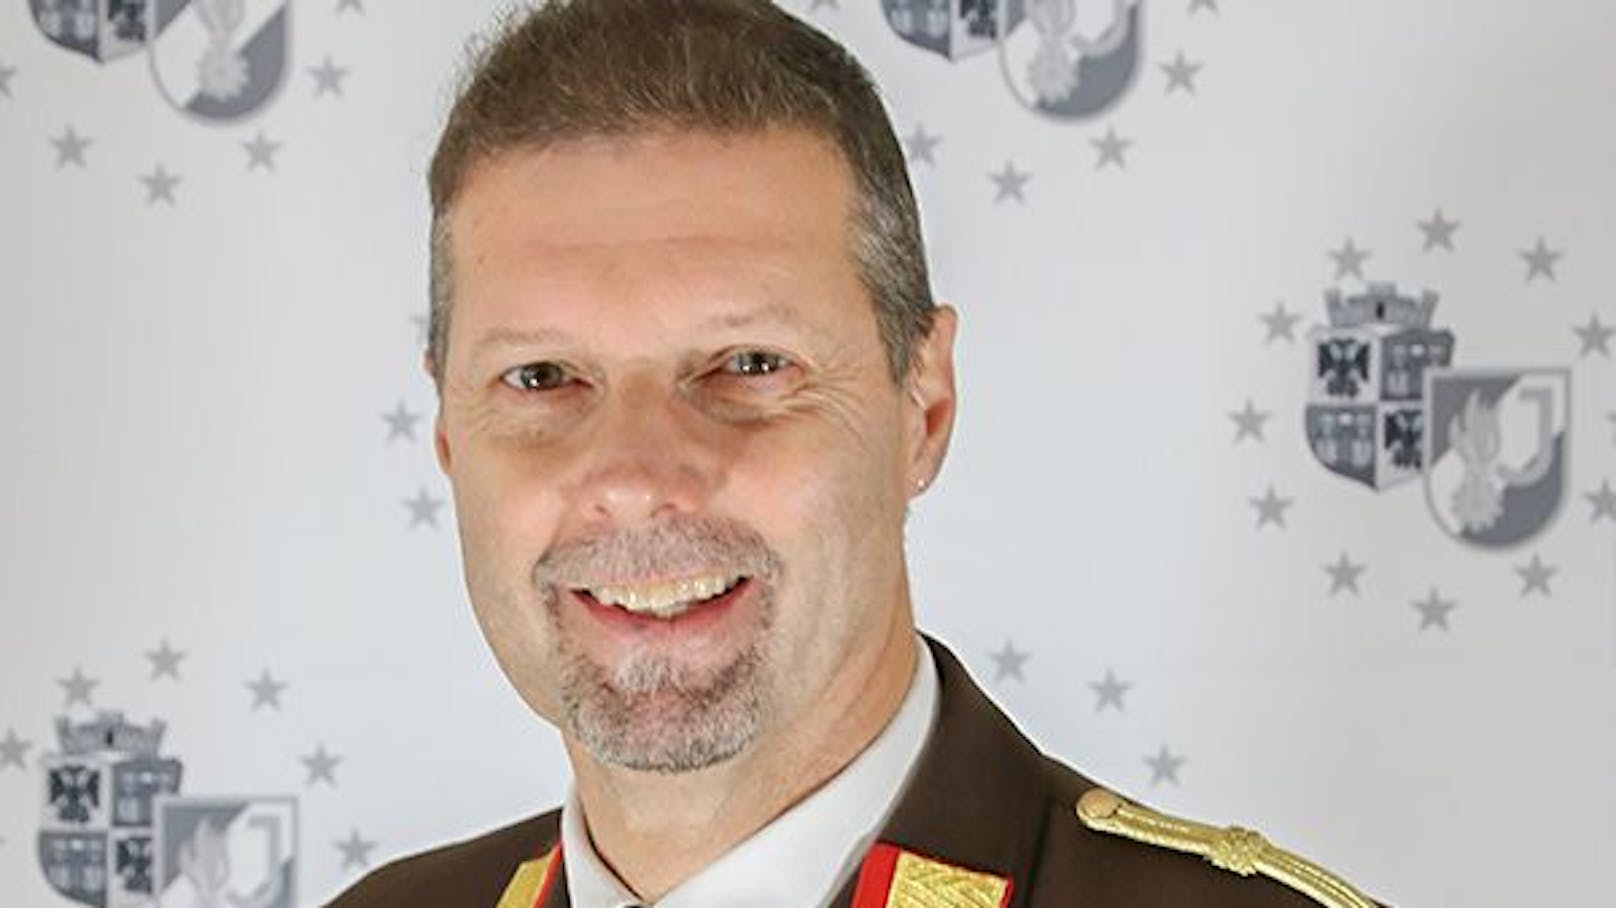 Christian Pfeiffer ist Kommandant der Feuerwehr Wiener Neustadt